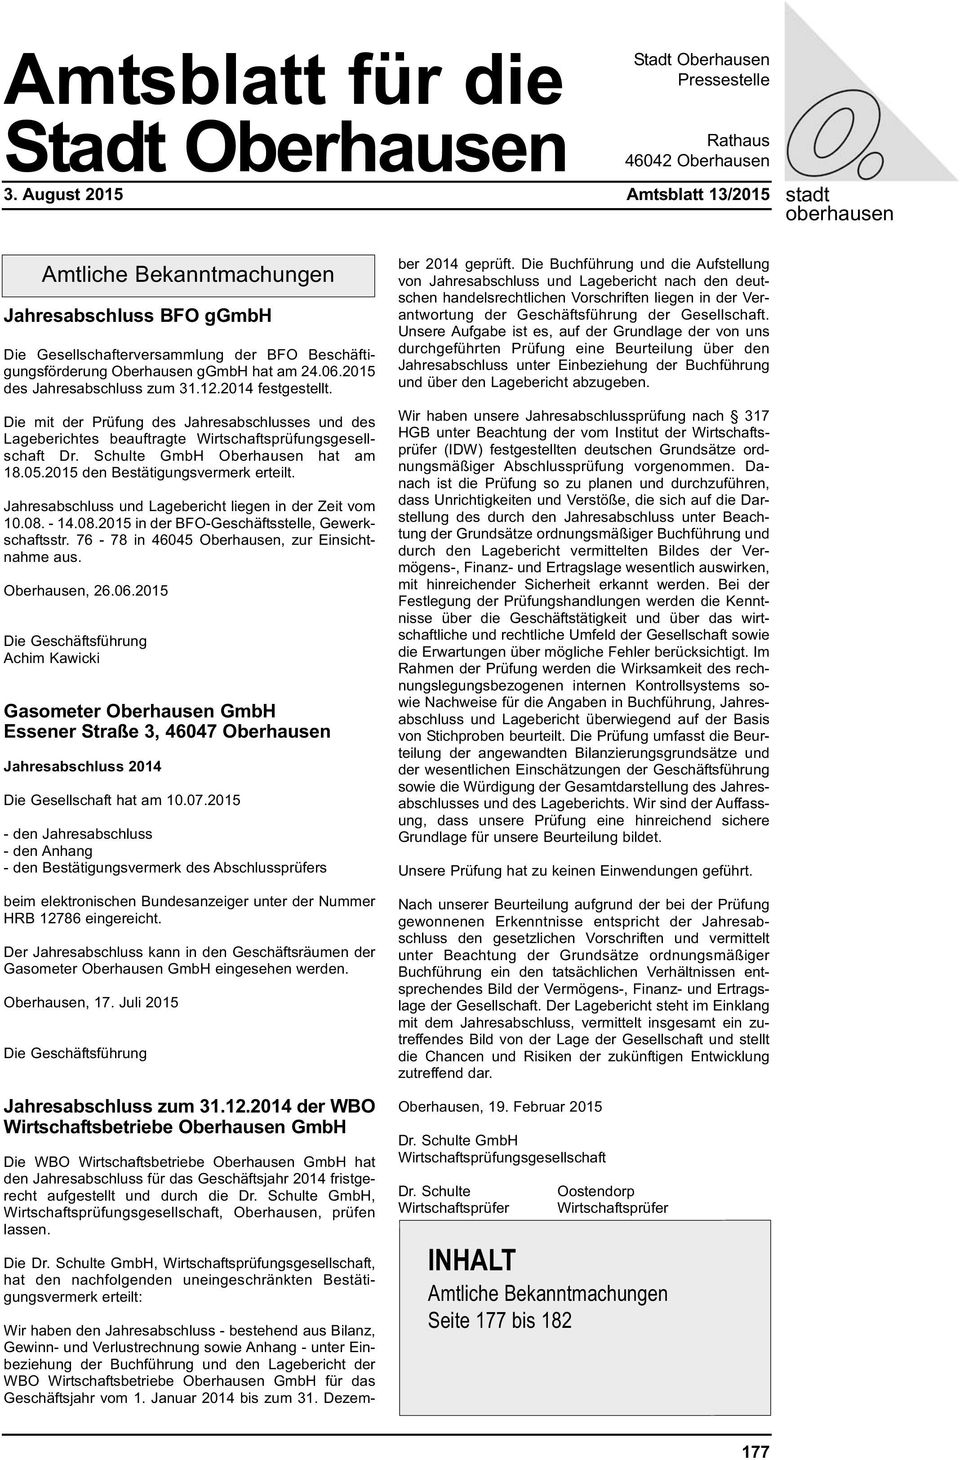 2015 des Jahresabschluss zum 31.12.2014 festgestellt. Die mit der Prüfung des Jahresabschlusses und des Lageberichtes beauftragte Wirtschaftsprüfungsgesellschaft Dr. Schulte GmbH Oberhausen hat am 18.